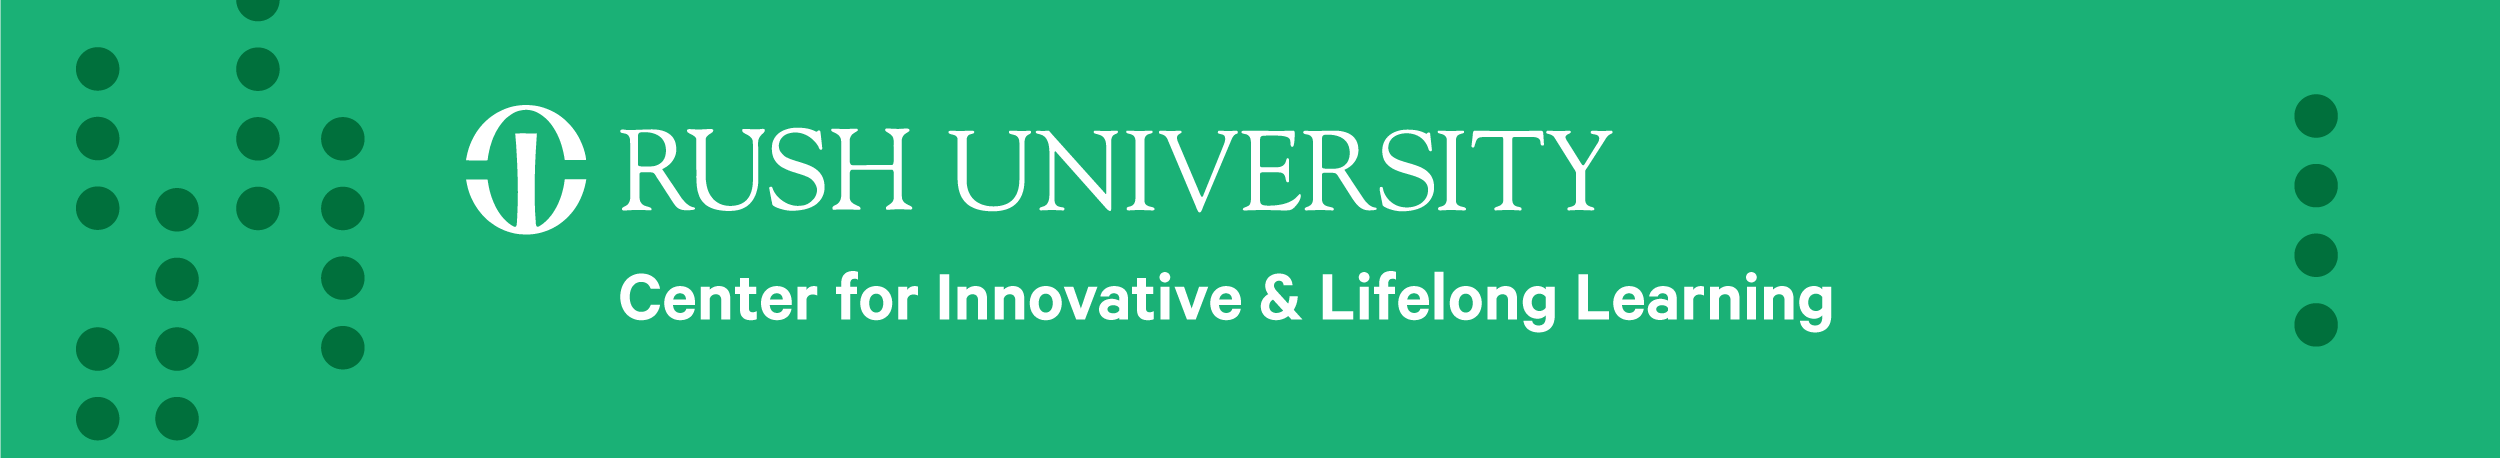 Center for Innovative & Lifelong Learning